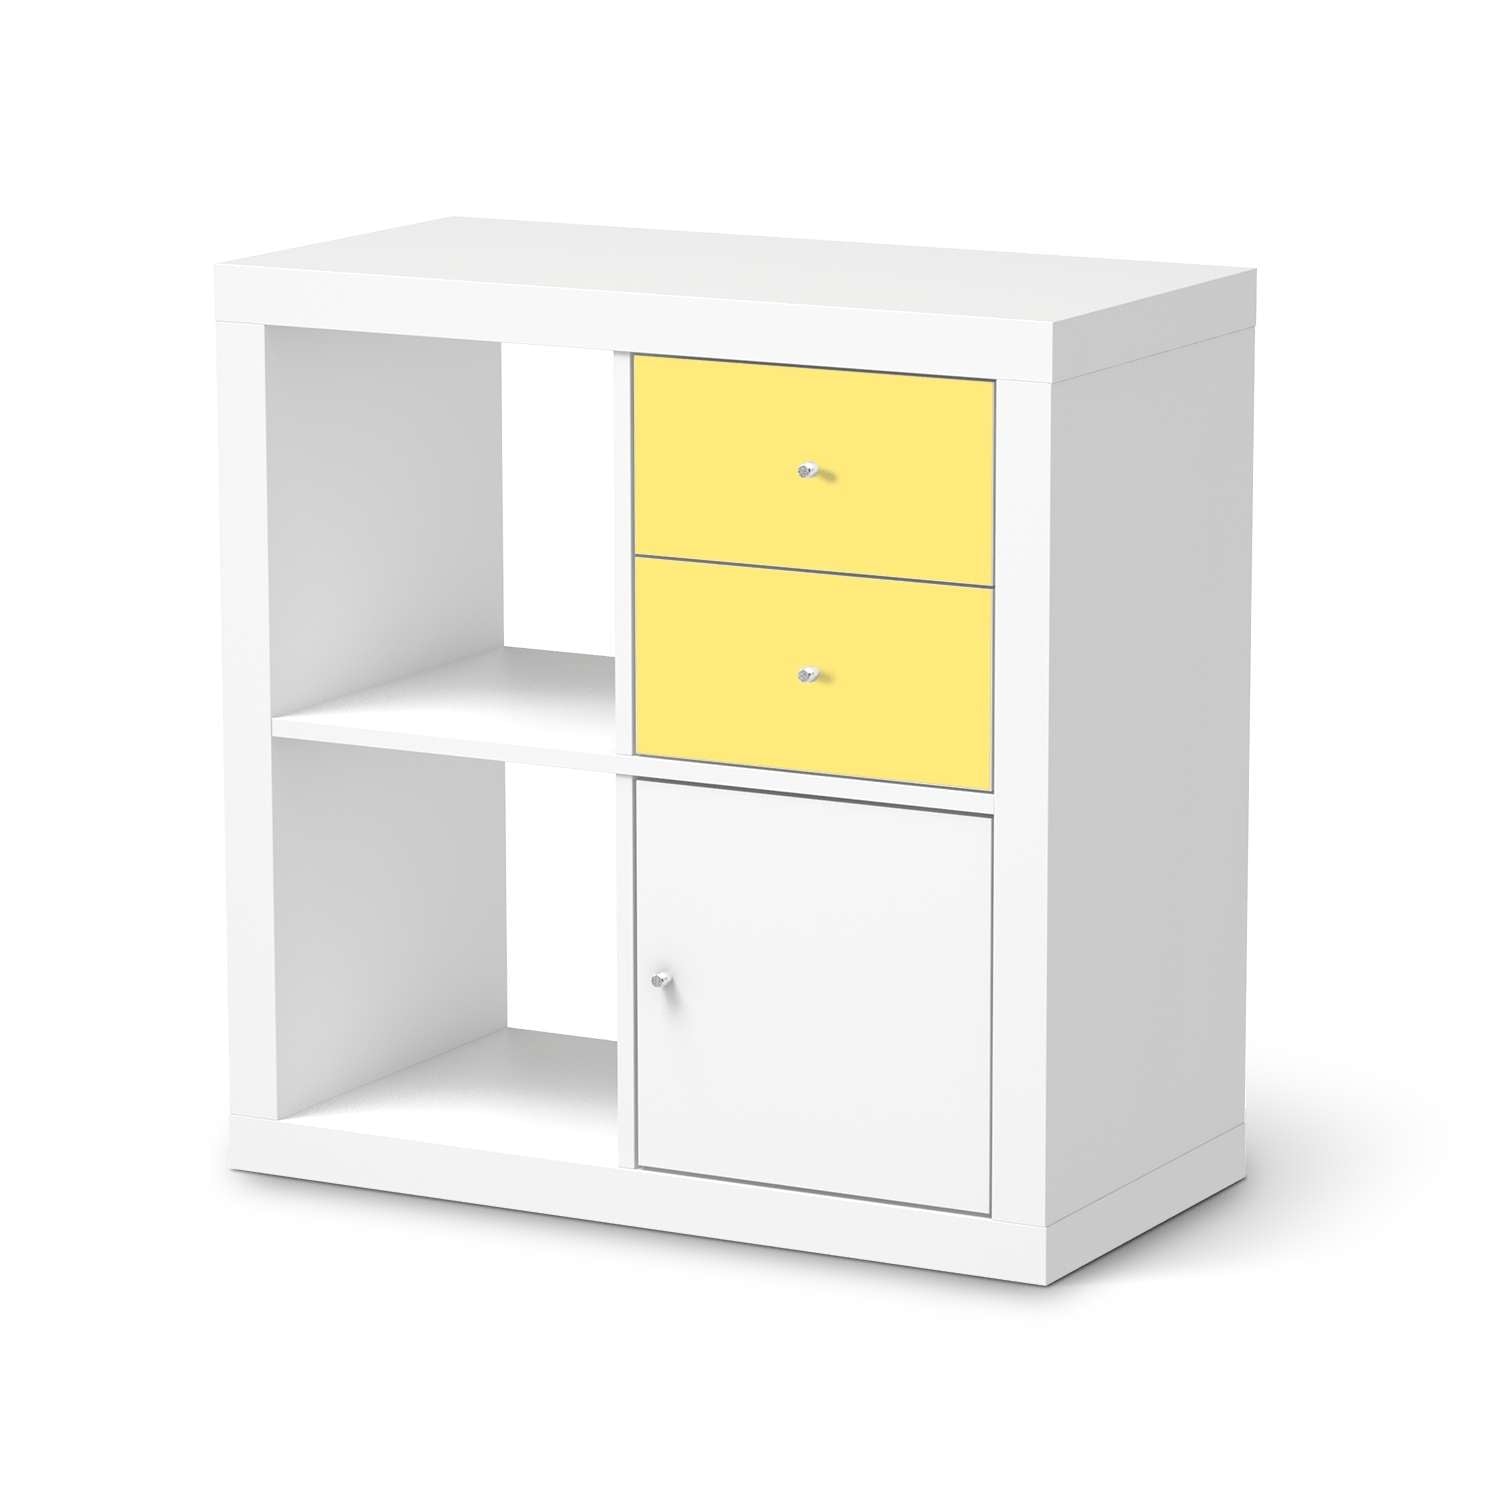 M?belfolie IKEA Kallax Regal Schubladen - Design: Gelb Light von creatisto